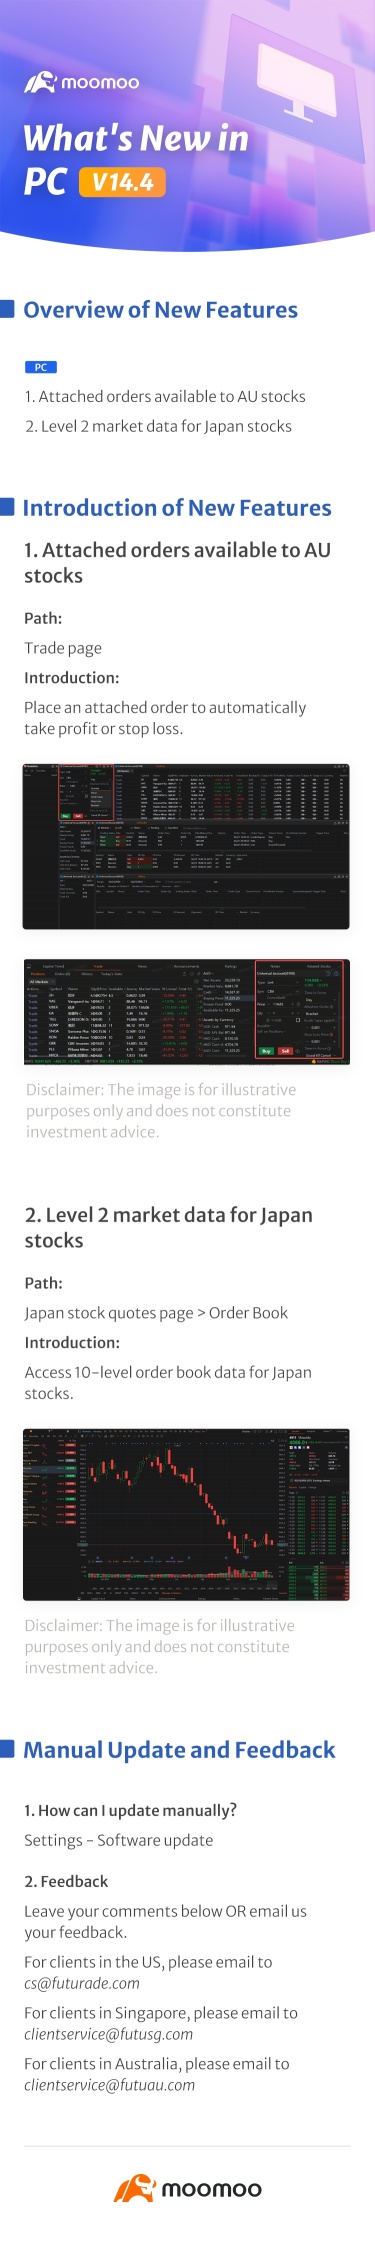 新着情報：PC v14.4での日本株のLV2市場データ